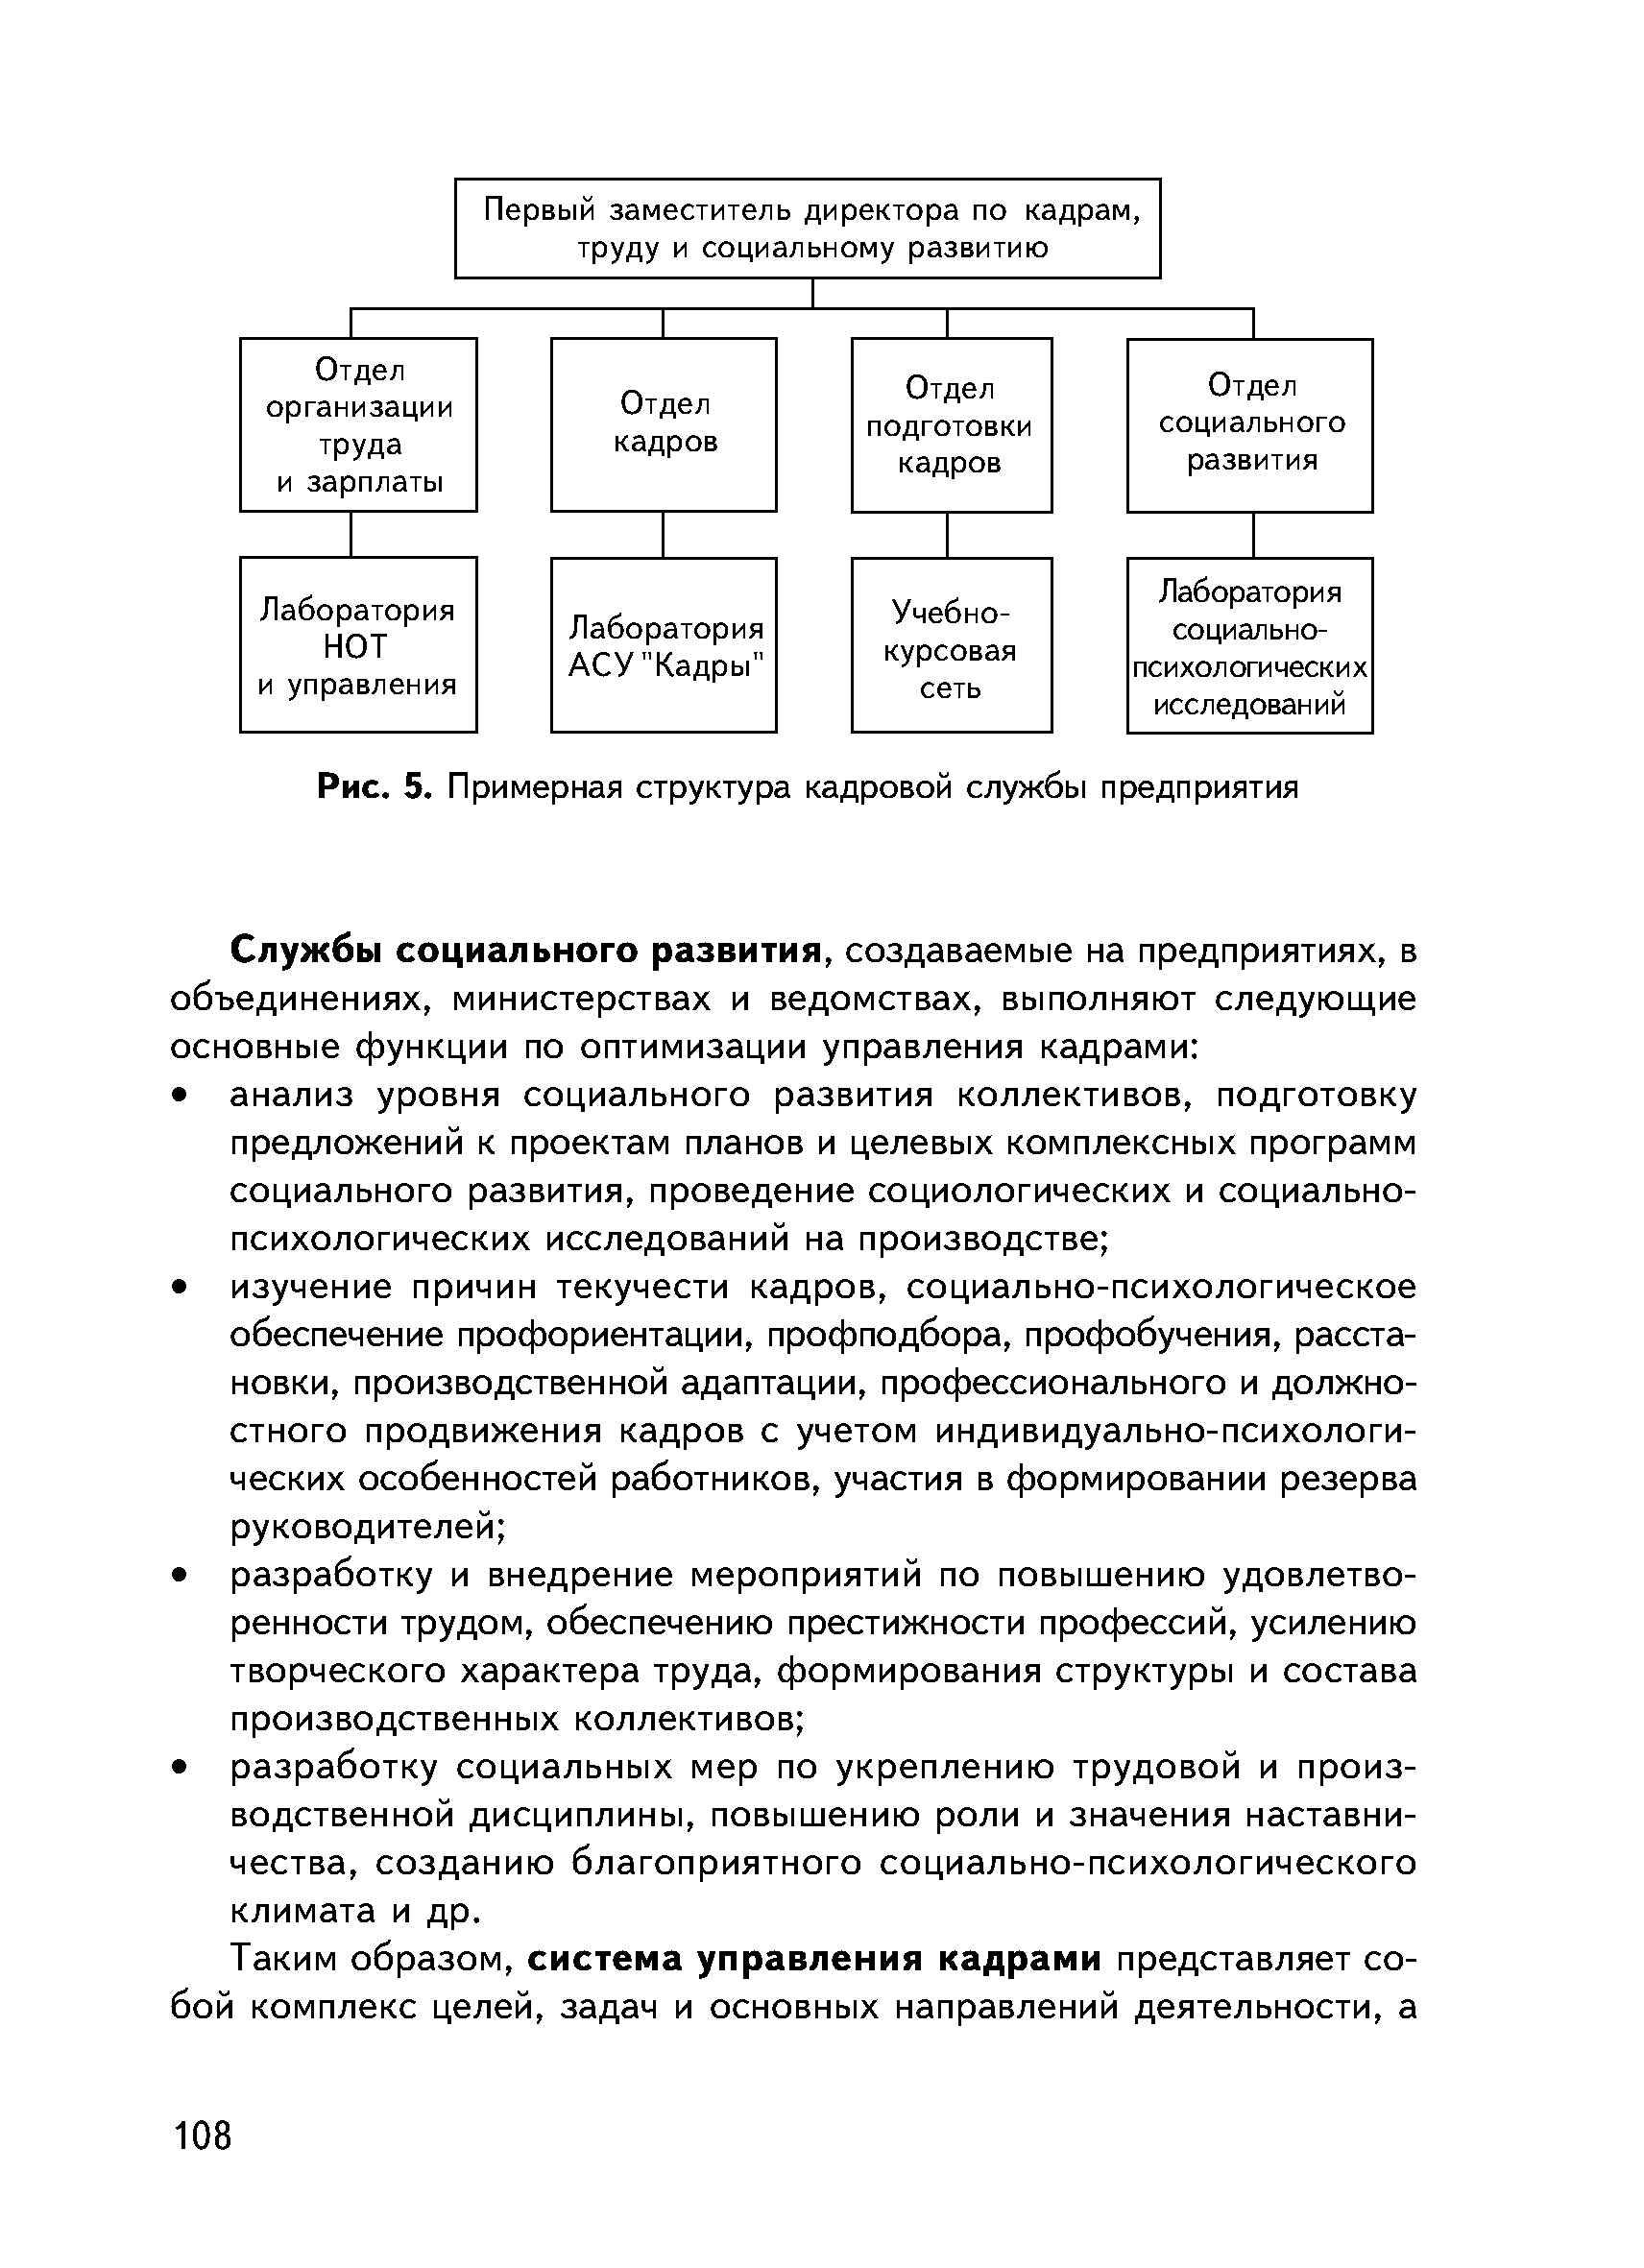 Рис. 5. Примерная структура кадровой службы предприятия
